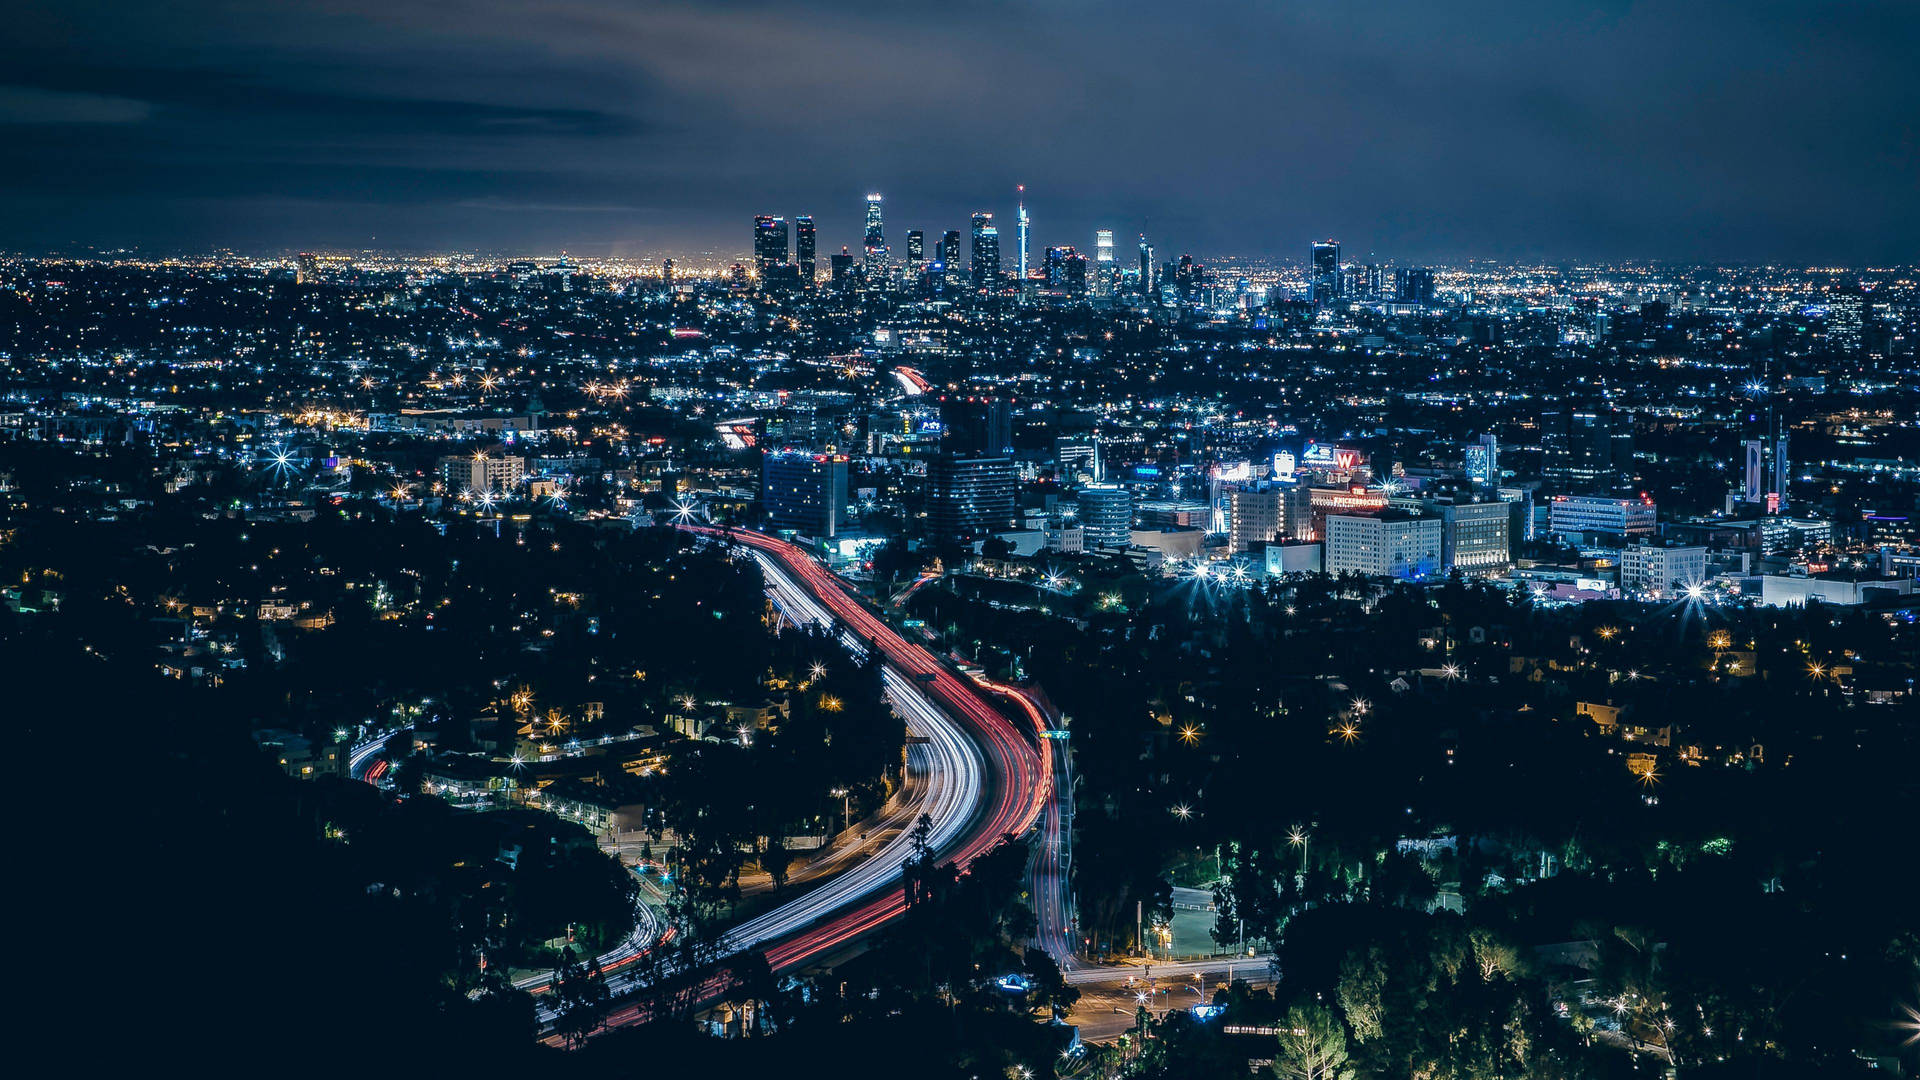 Bläulicheslangzeitbelichtungsfoto Von Los Angeles In 4k Wallpaper